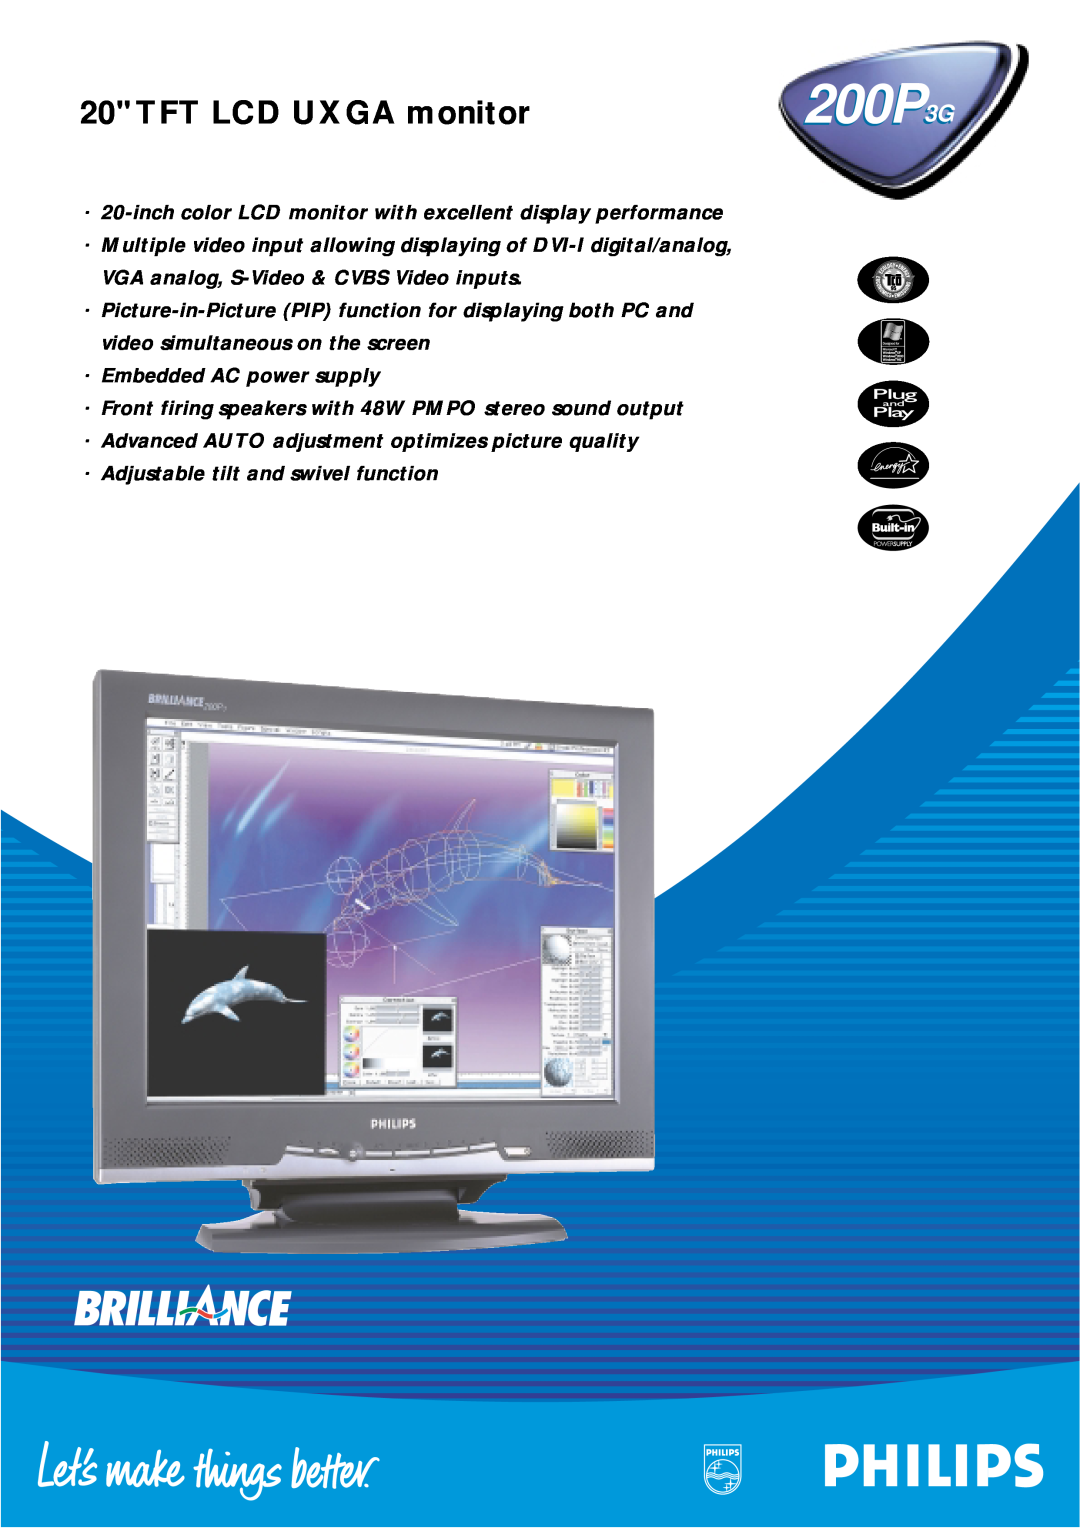 Philips 200P3G manual TFT LCD UXGA monitor 